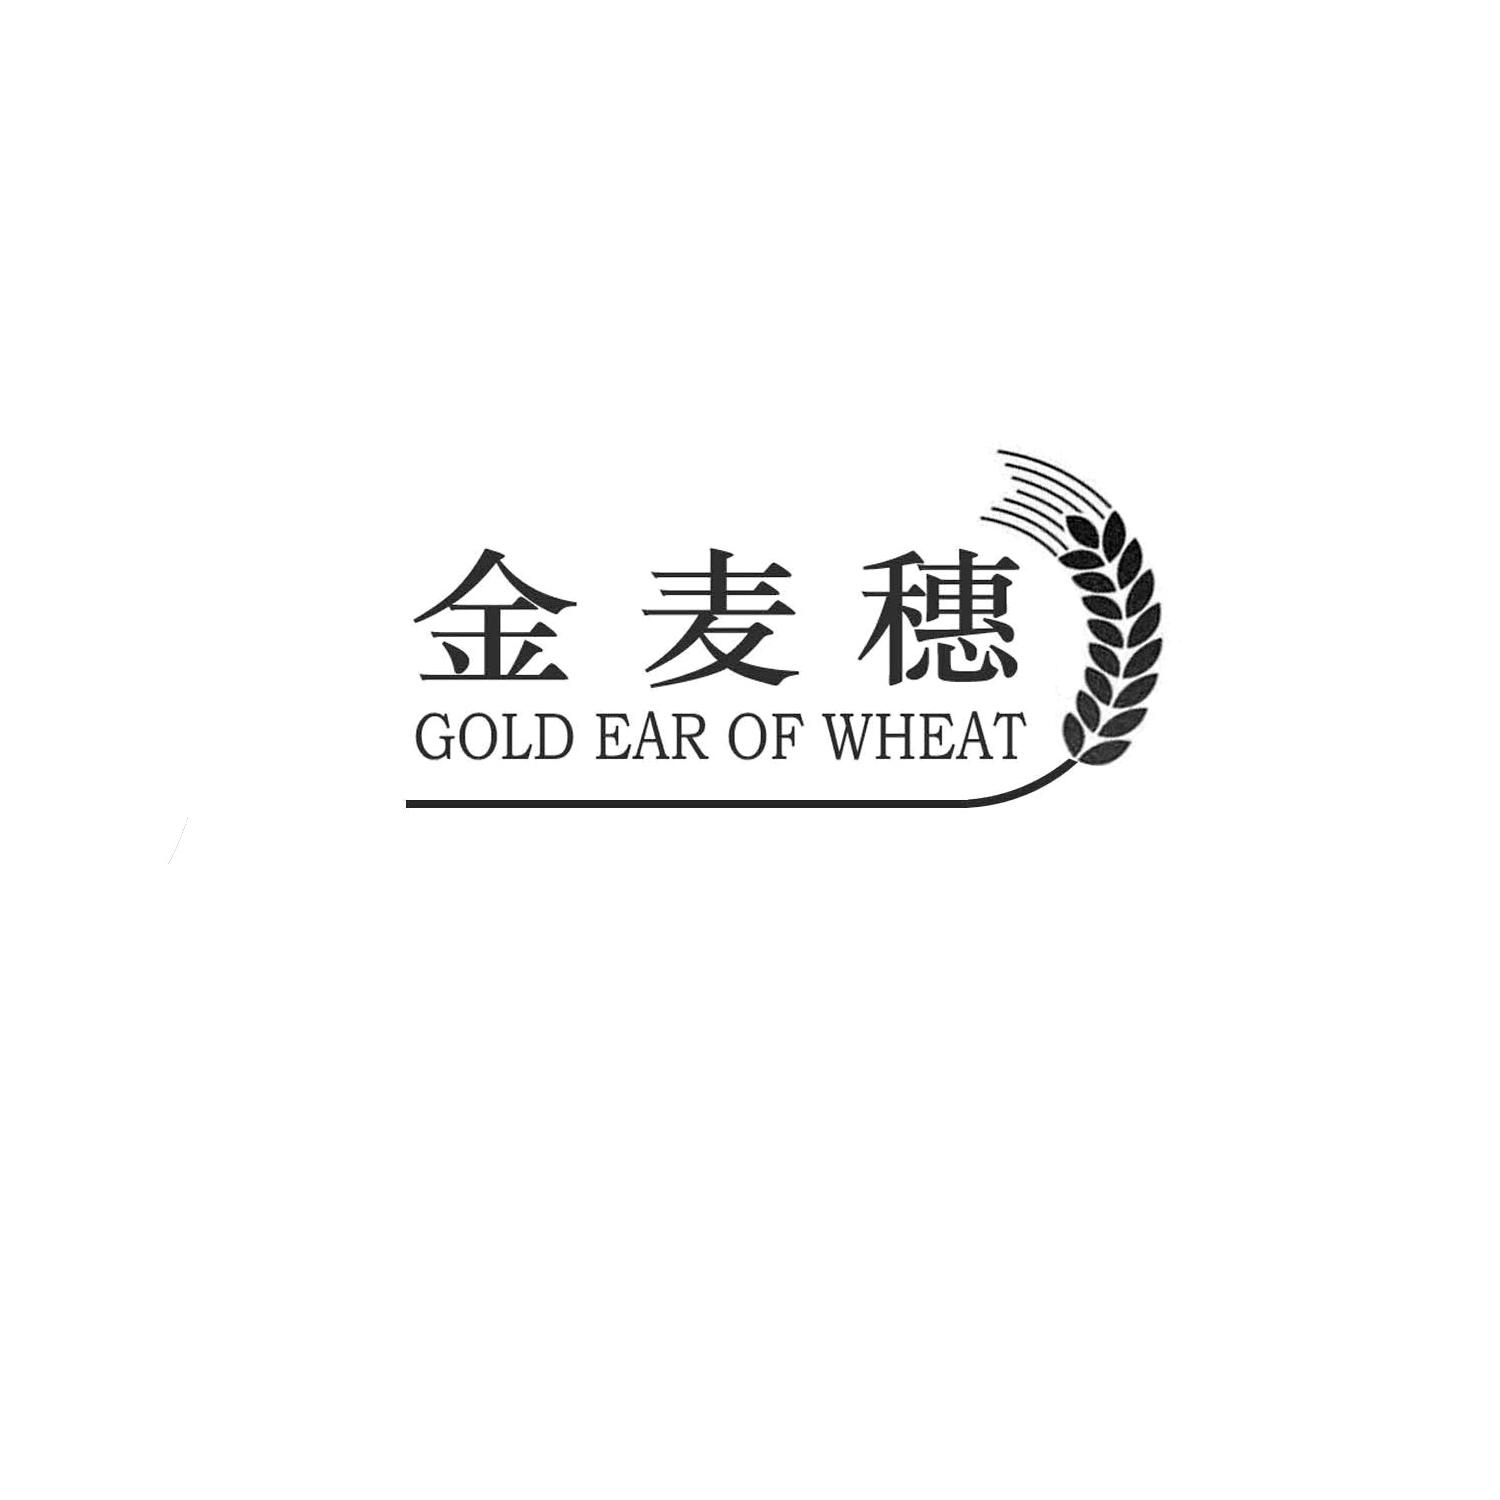 金麦穗 gold ear of  wheat申请被驳回不予受理等该商标已失效